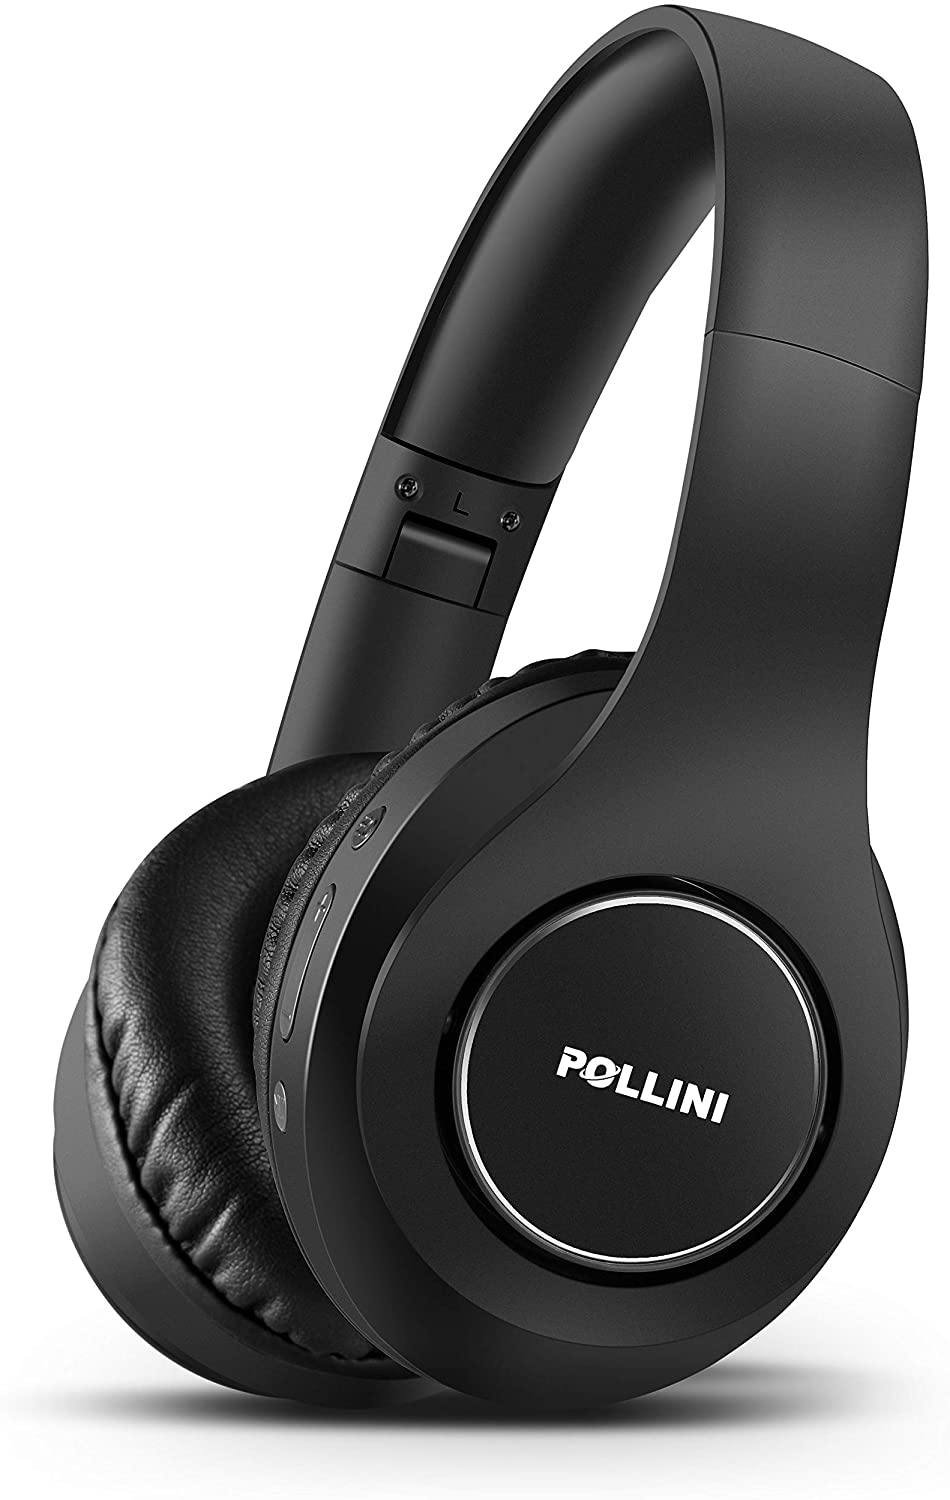 pollini Wireless Headset V5.0